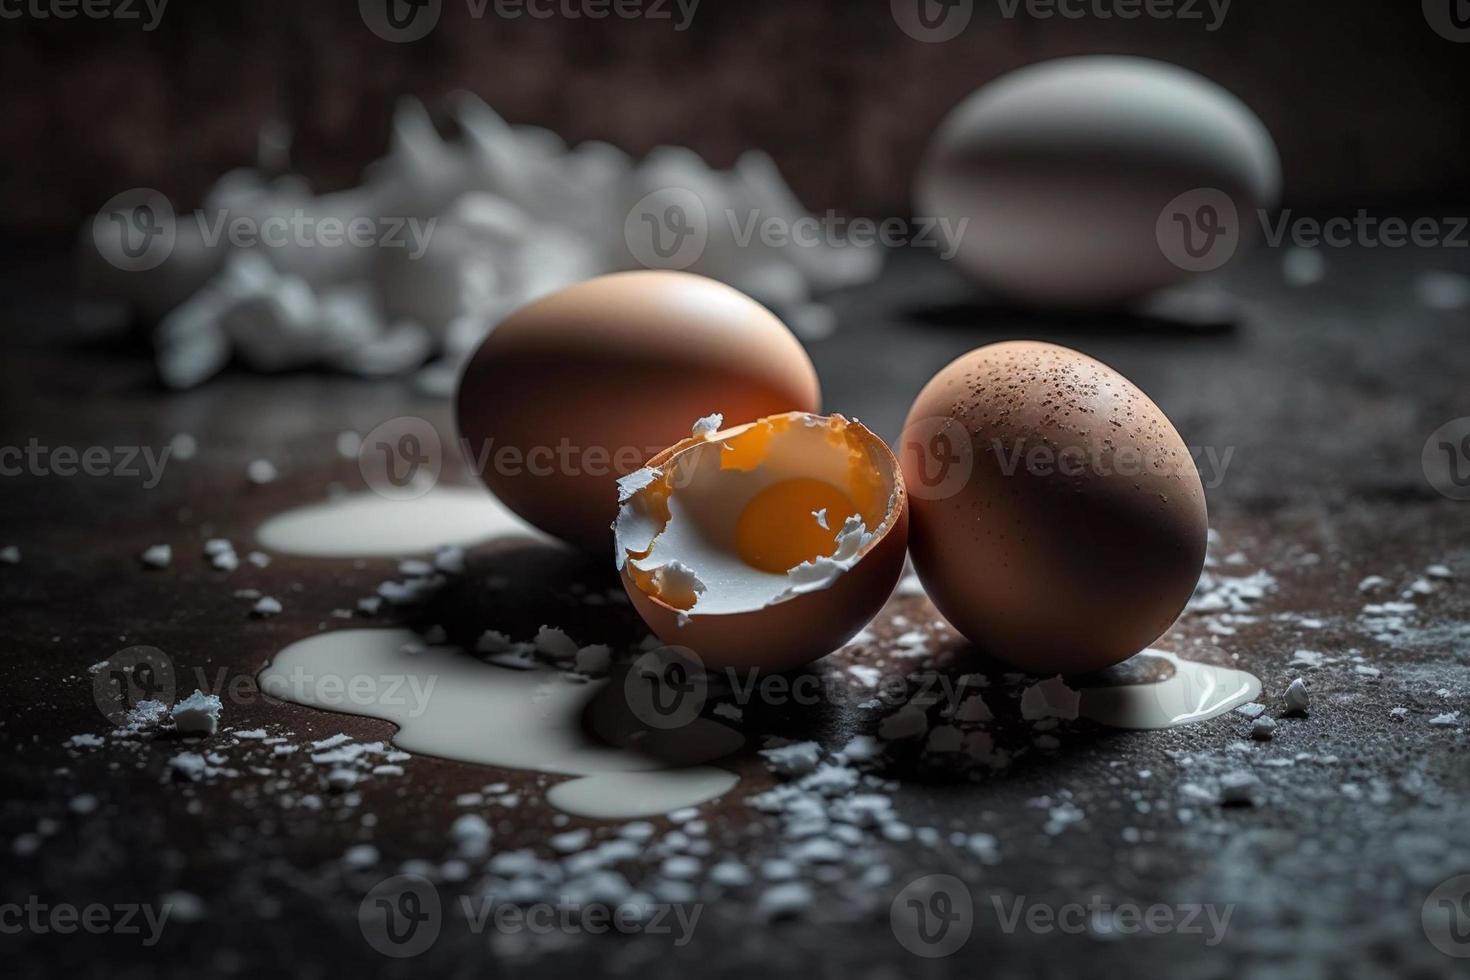 Hähnchen Eier, braun und Weiß Eier auf ein Tisch. Eier bereit zu Sein benutzt mit Mehl und Weizen im Rezept auf das Tisch. Typen von Eier benutzt im Kuchen Vorbereitung und verschiedene Rezepte. foto